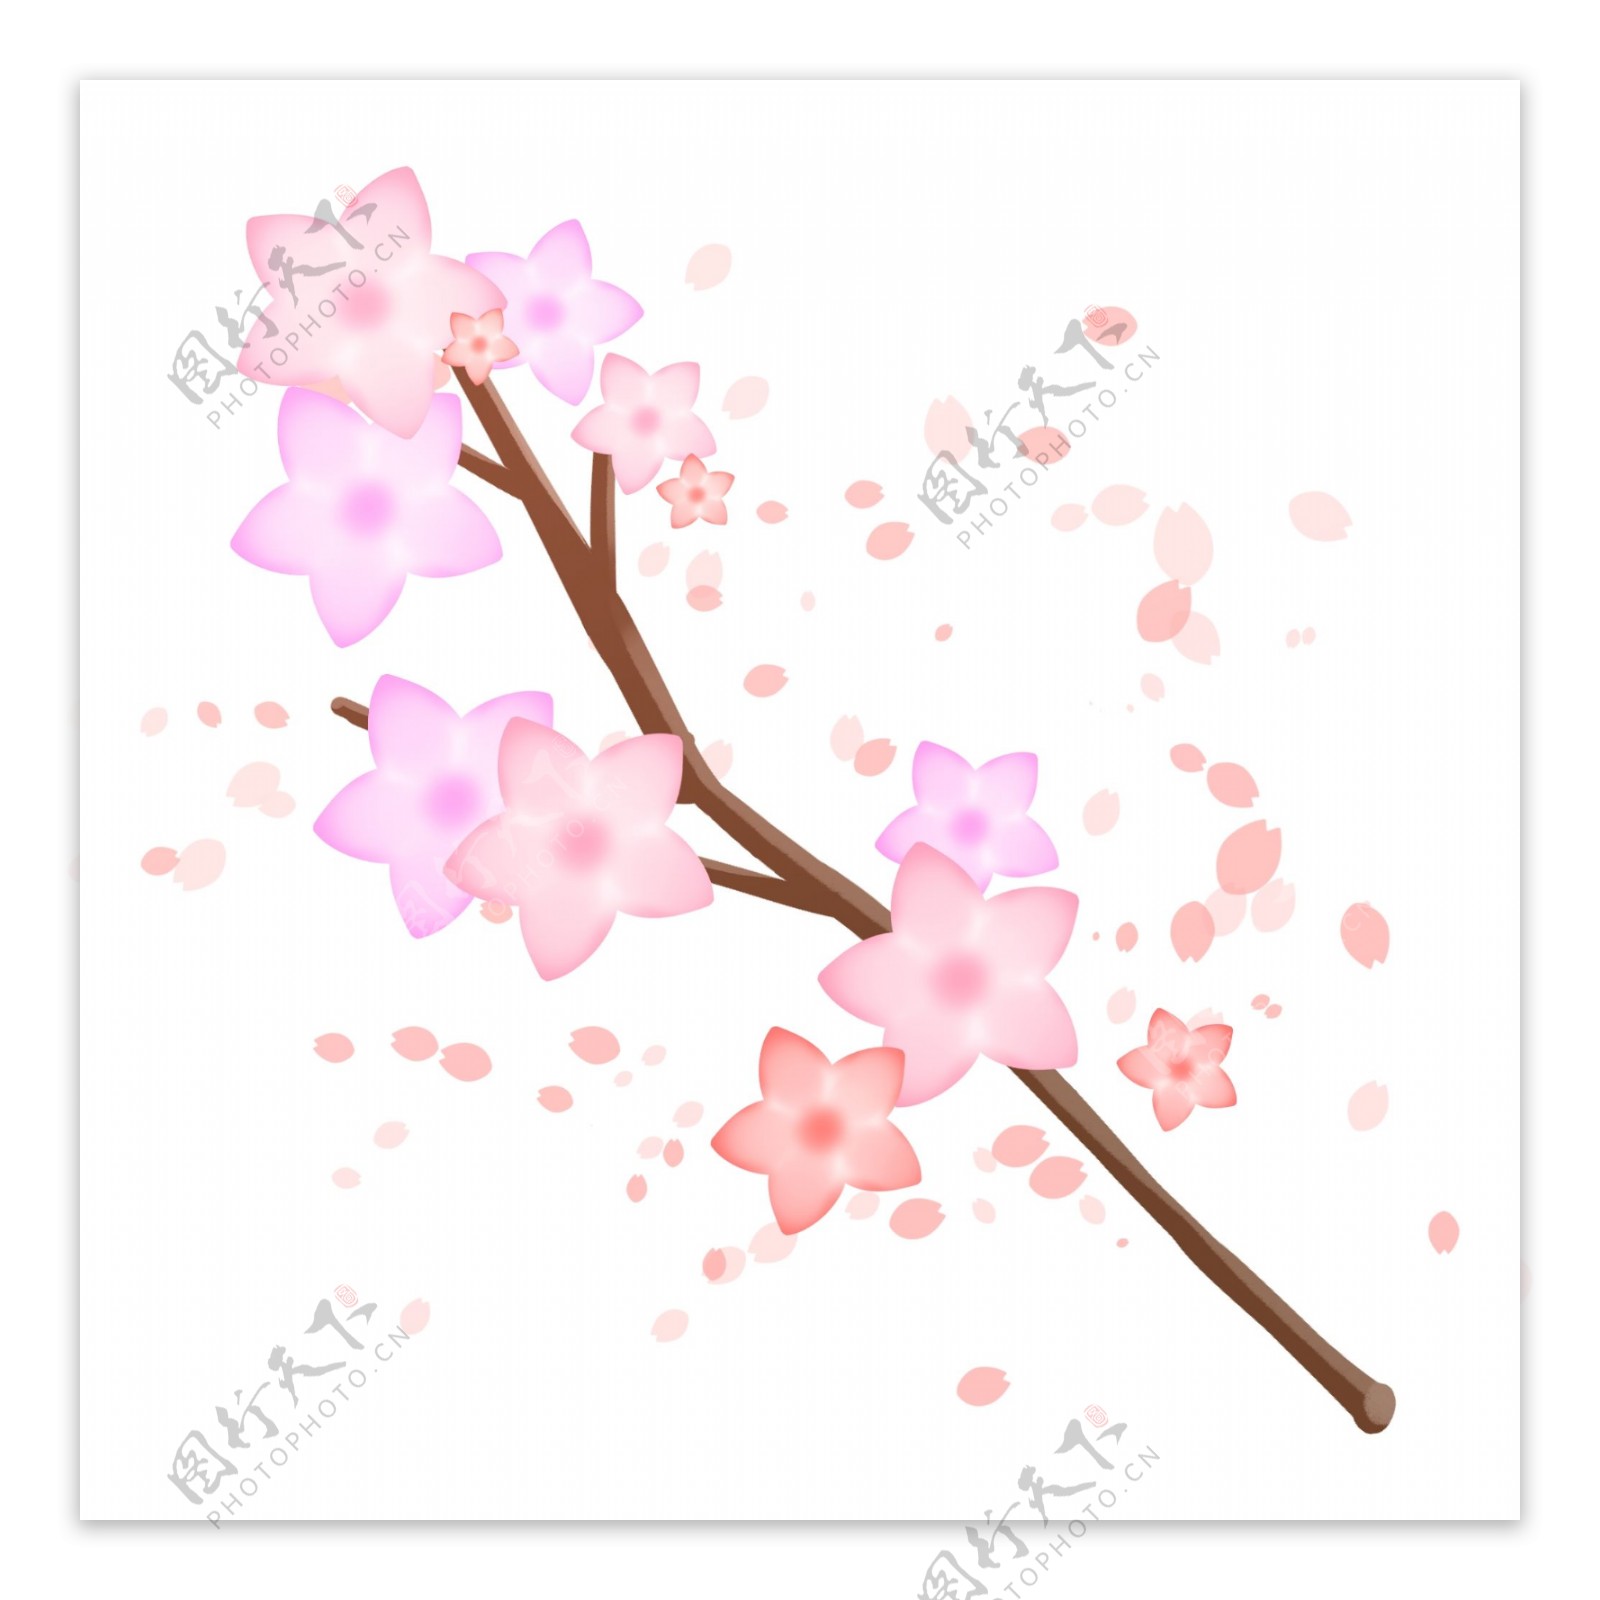 粉色星星樱花插图